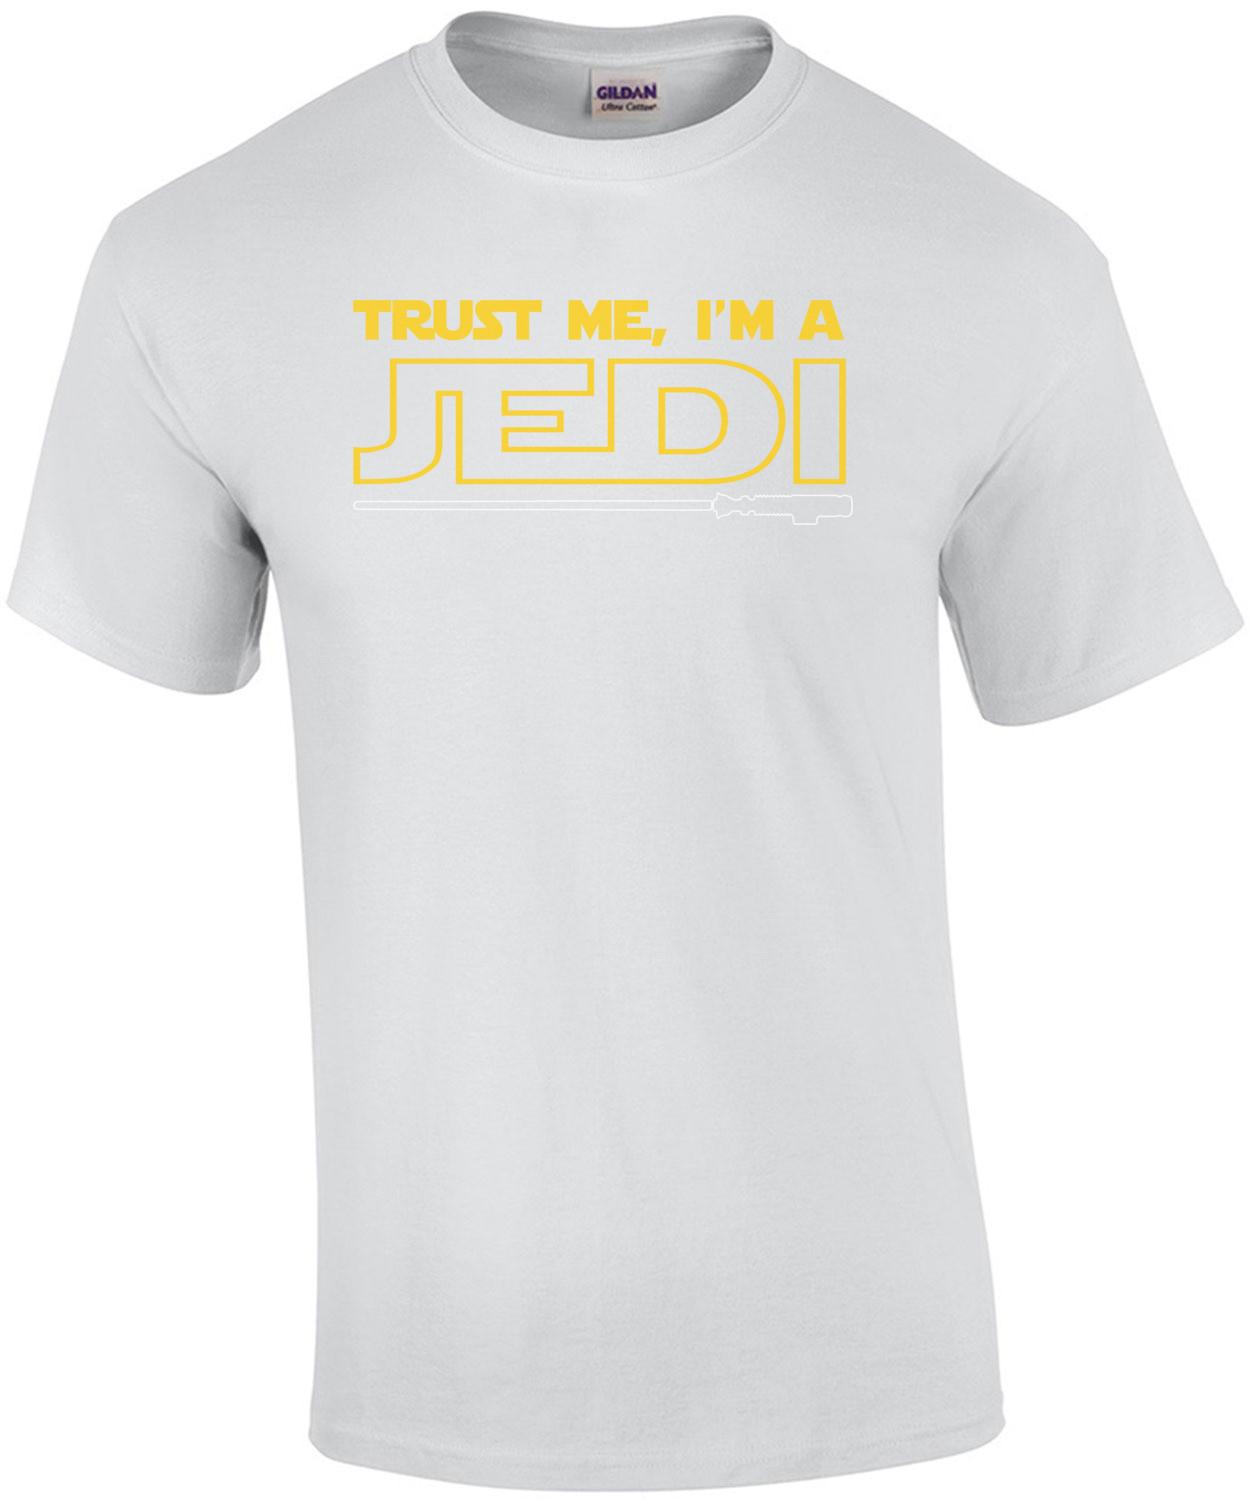 Trust me, I'm a Jedi Star - Wars T-Shirt